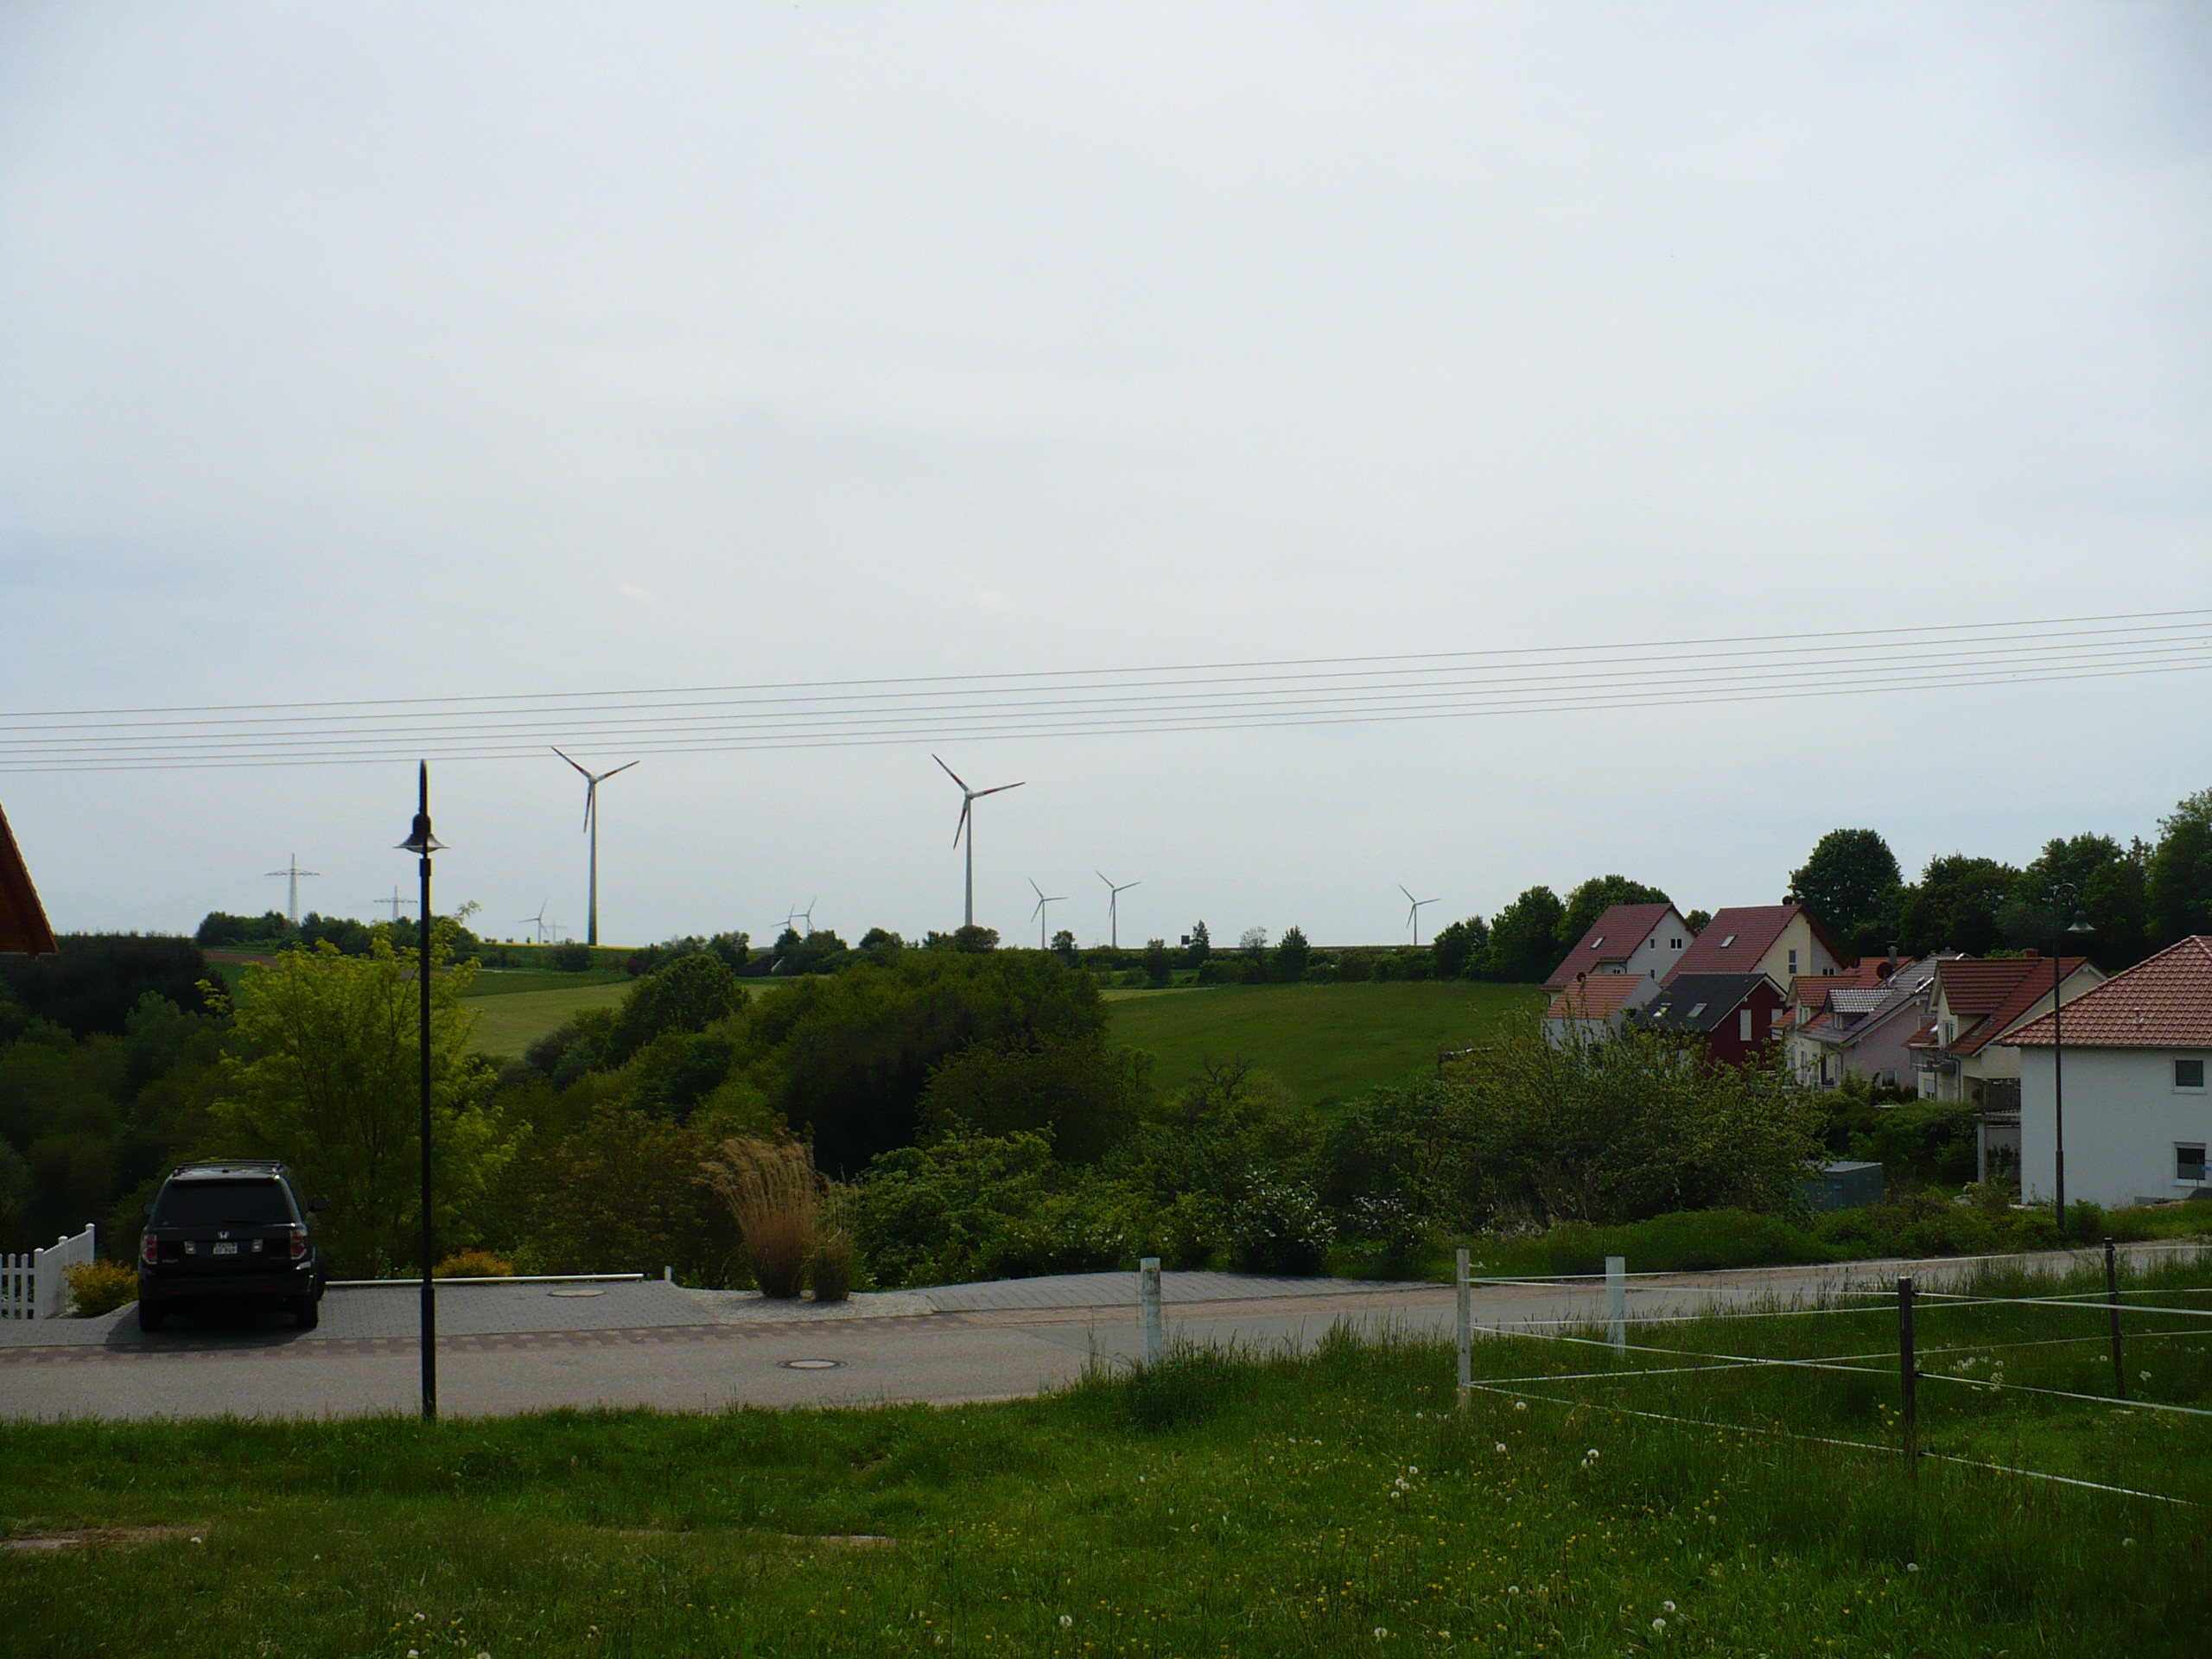 Neues aus dem Land der Windmühlen - Sickinger Höhe von Marko Barth, Mai 2015 Die Gemeinden Hermersberg und Weselberg setzen seit Jahren sehr konsequent auf den Ausbau von Windkraftanlagen auf ihrem